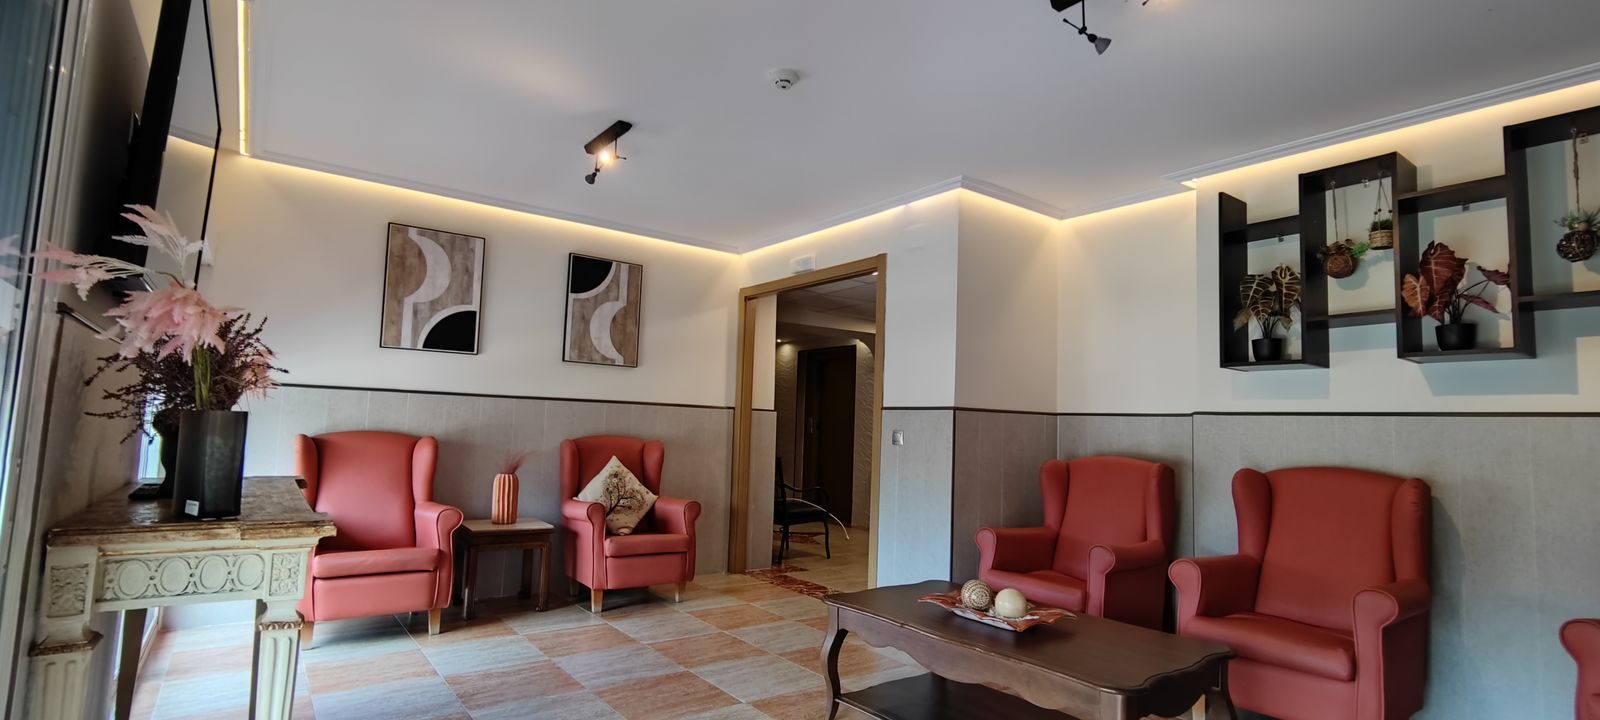 Foto 28 de Residencias geriátricas en Manzanares el Real | Ponderosa Real Hotel Residencia para Mayores